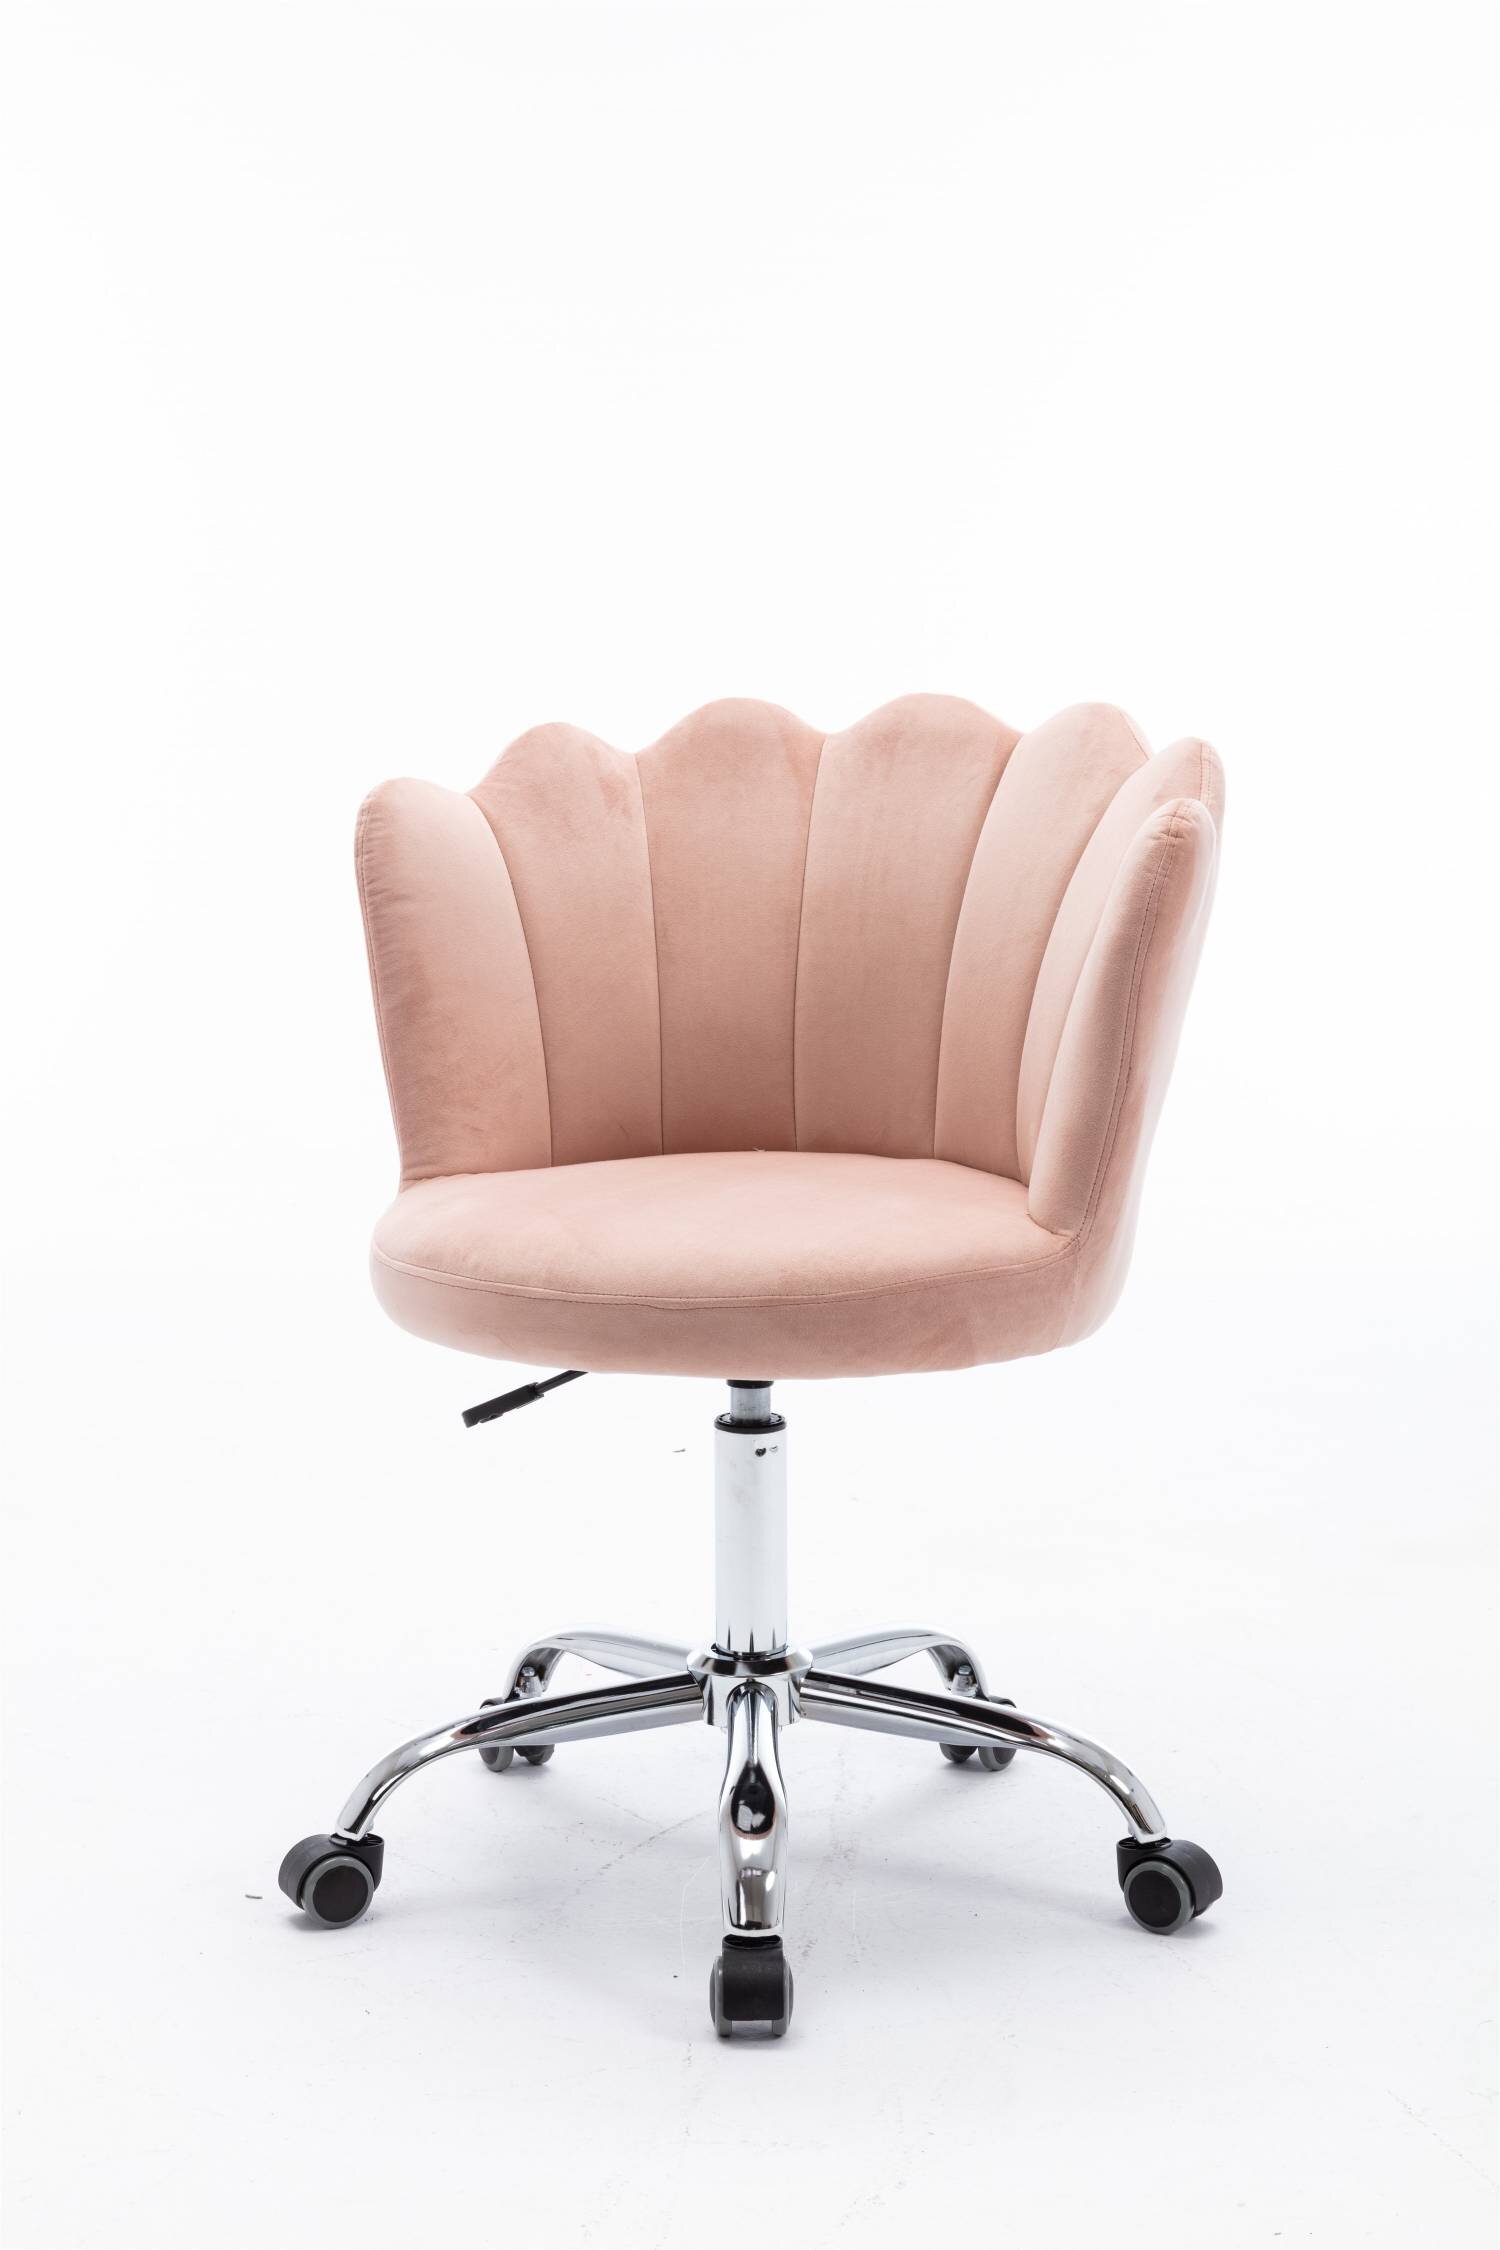 Everly Quinn Seashell Swivel Office Chair Upholstered Velvetdesk Chair Pink Wayfair